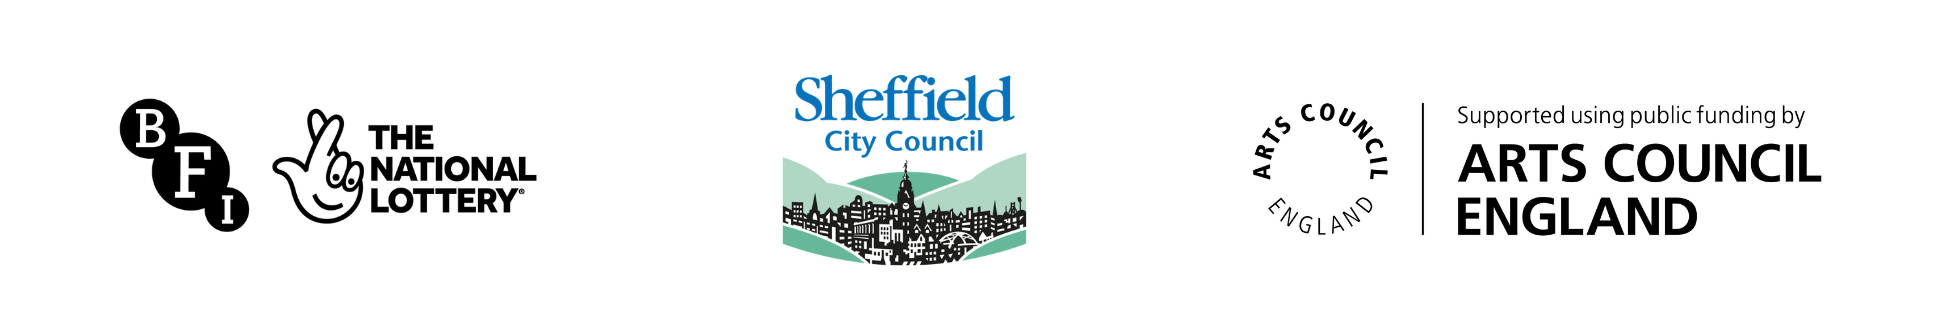 BFI logo, Sheffield City Council logo, Arts Council logo